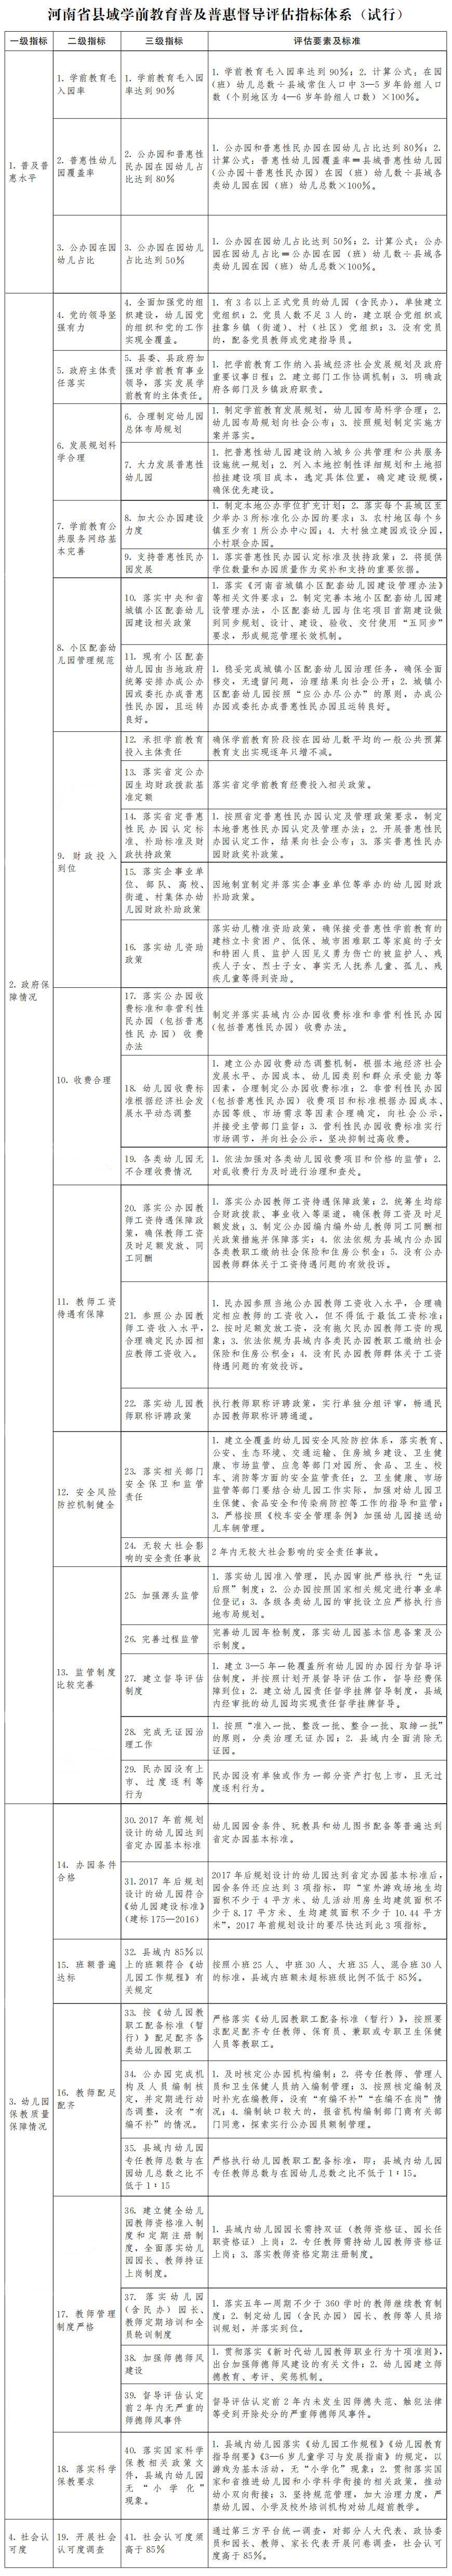 河南省人民政府办公厅关于印发河南省县域学前教育普及普惠督导评估实施方案的通知